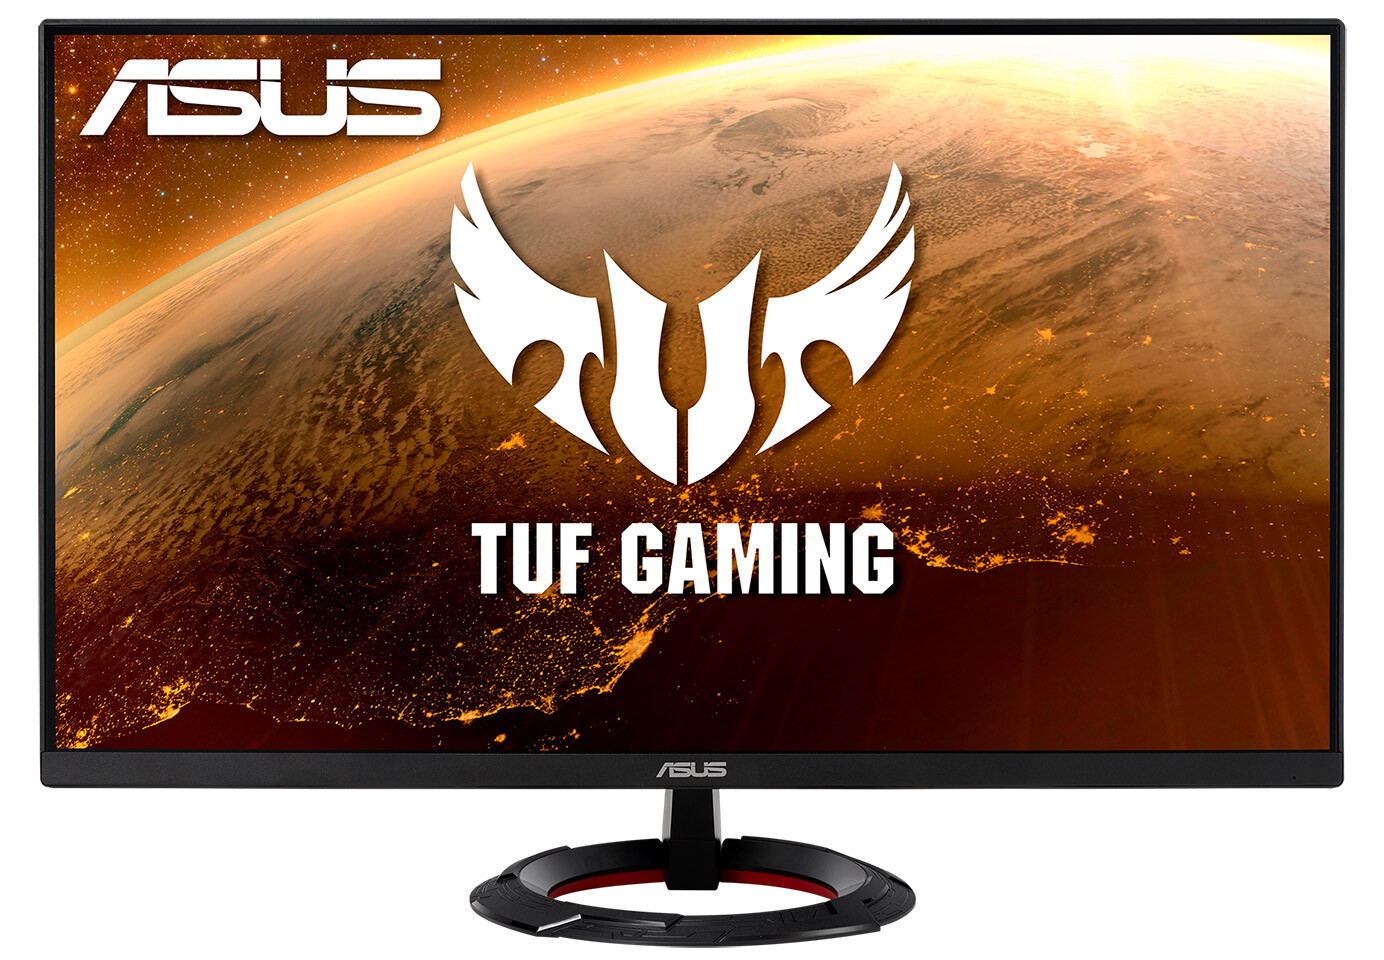 Asus ra mắt màn hình TUF Gaming 27 inch